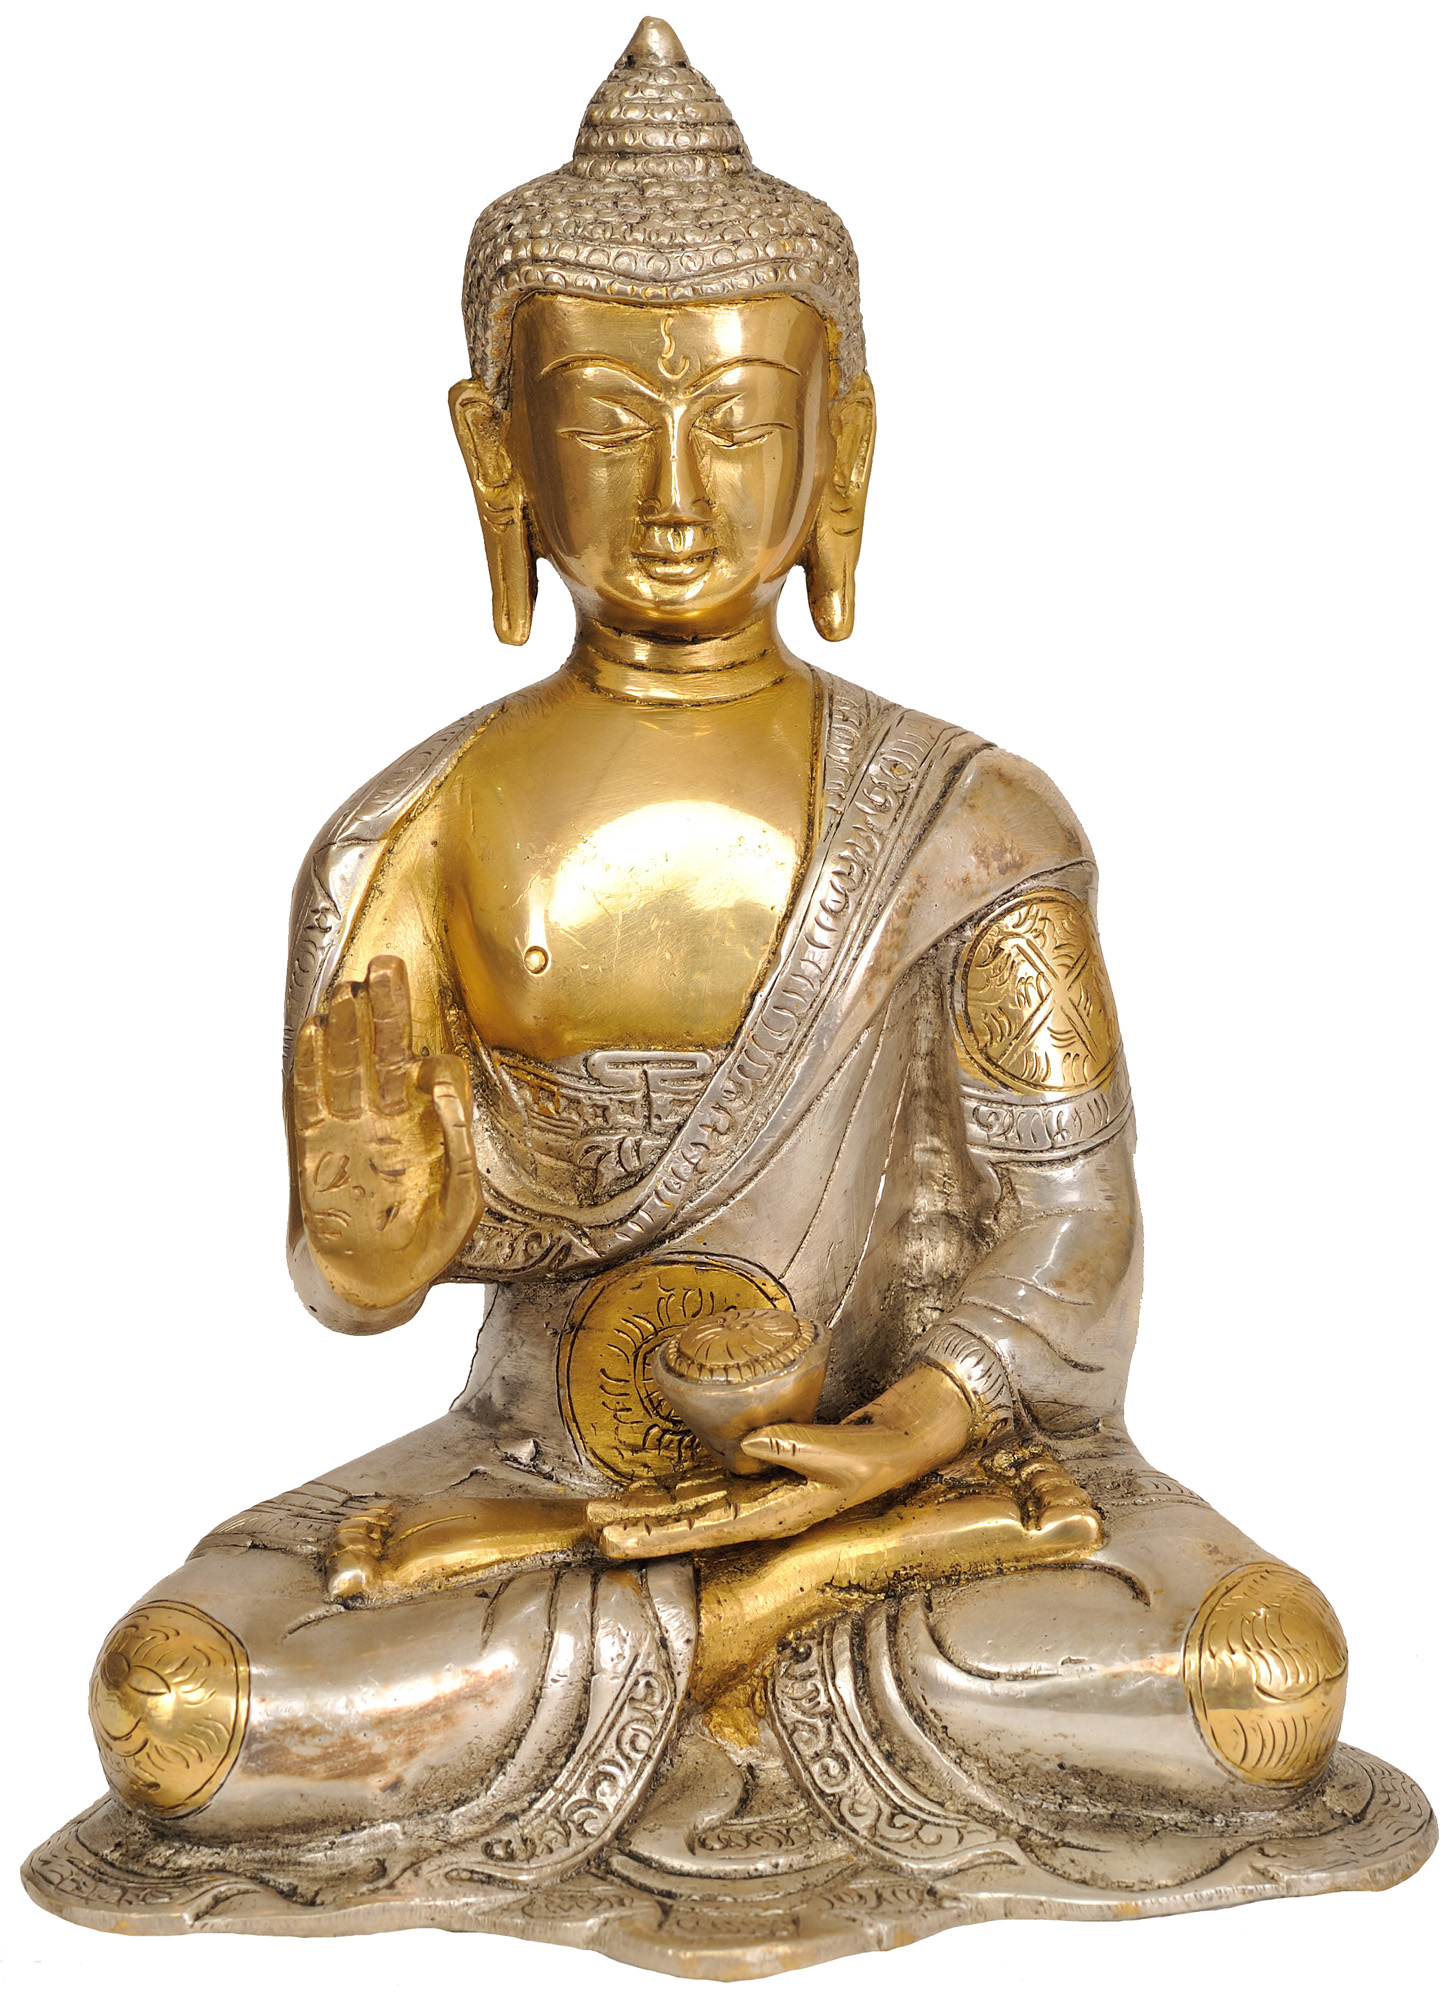 The Resplendent Buddha, His Hand In Vitarka Mudra